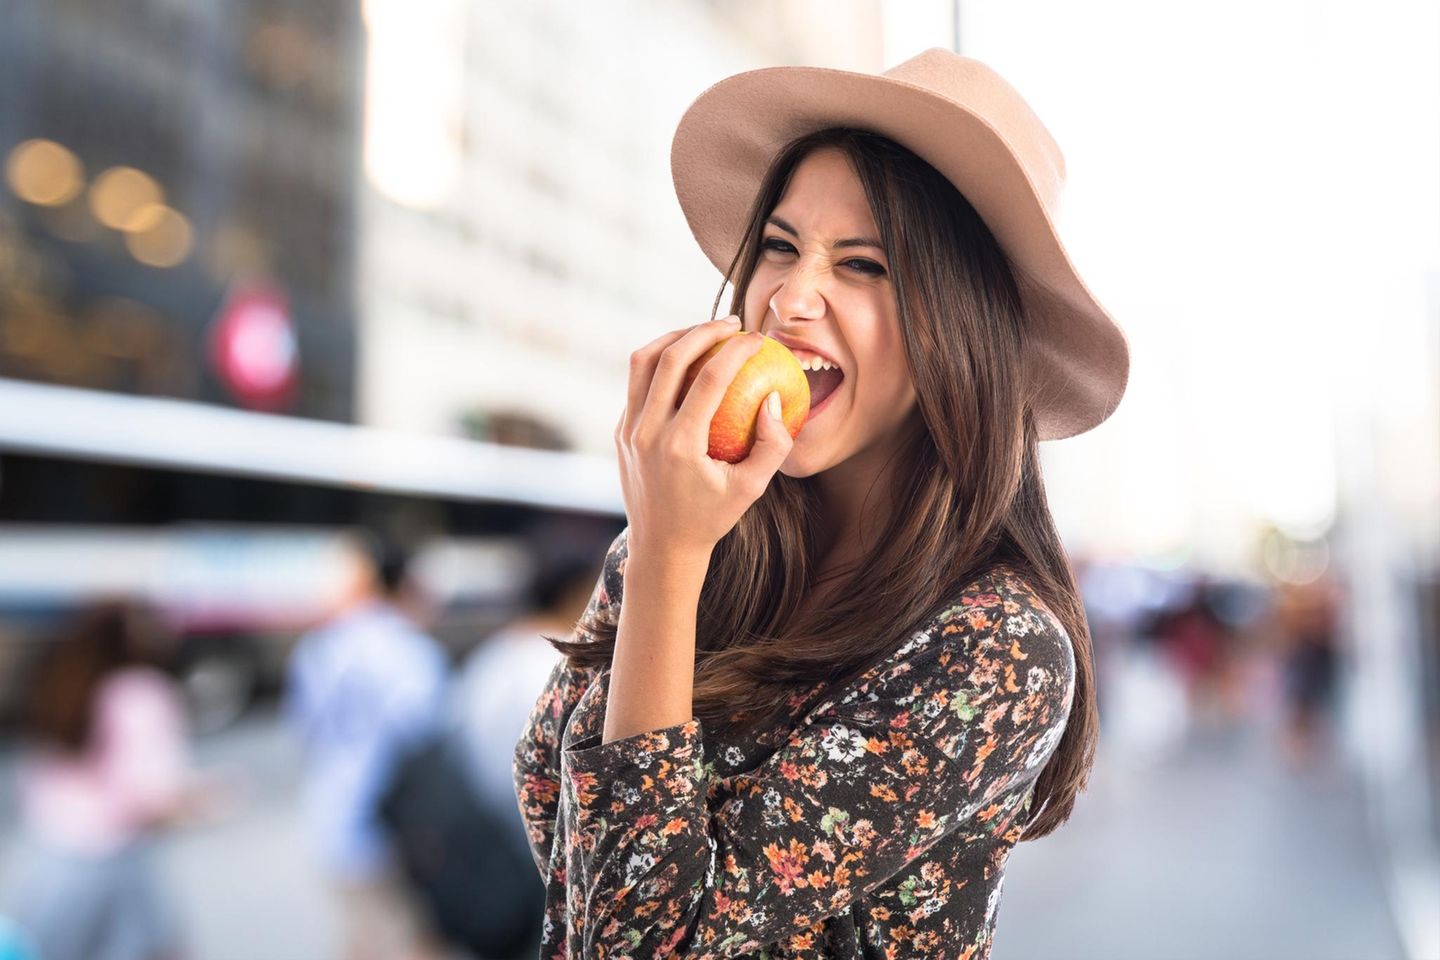 Apfeldiät: Frau beißt in einen Apfel